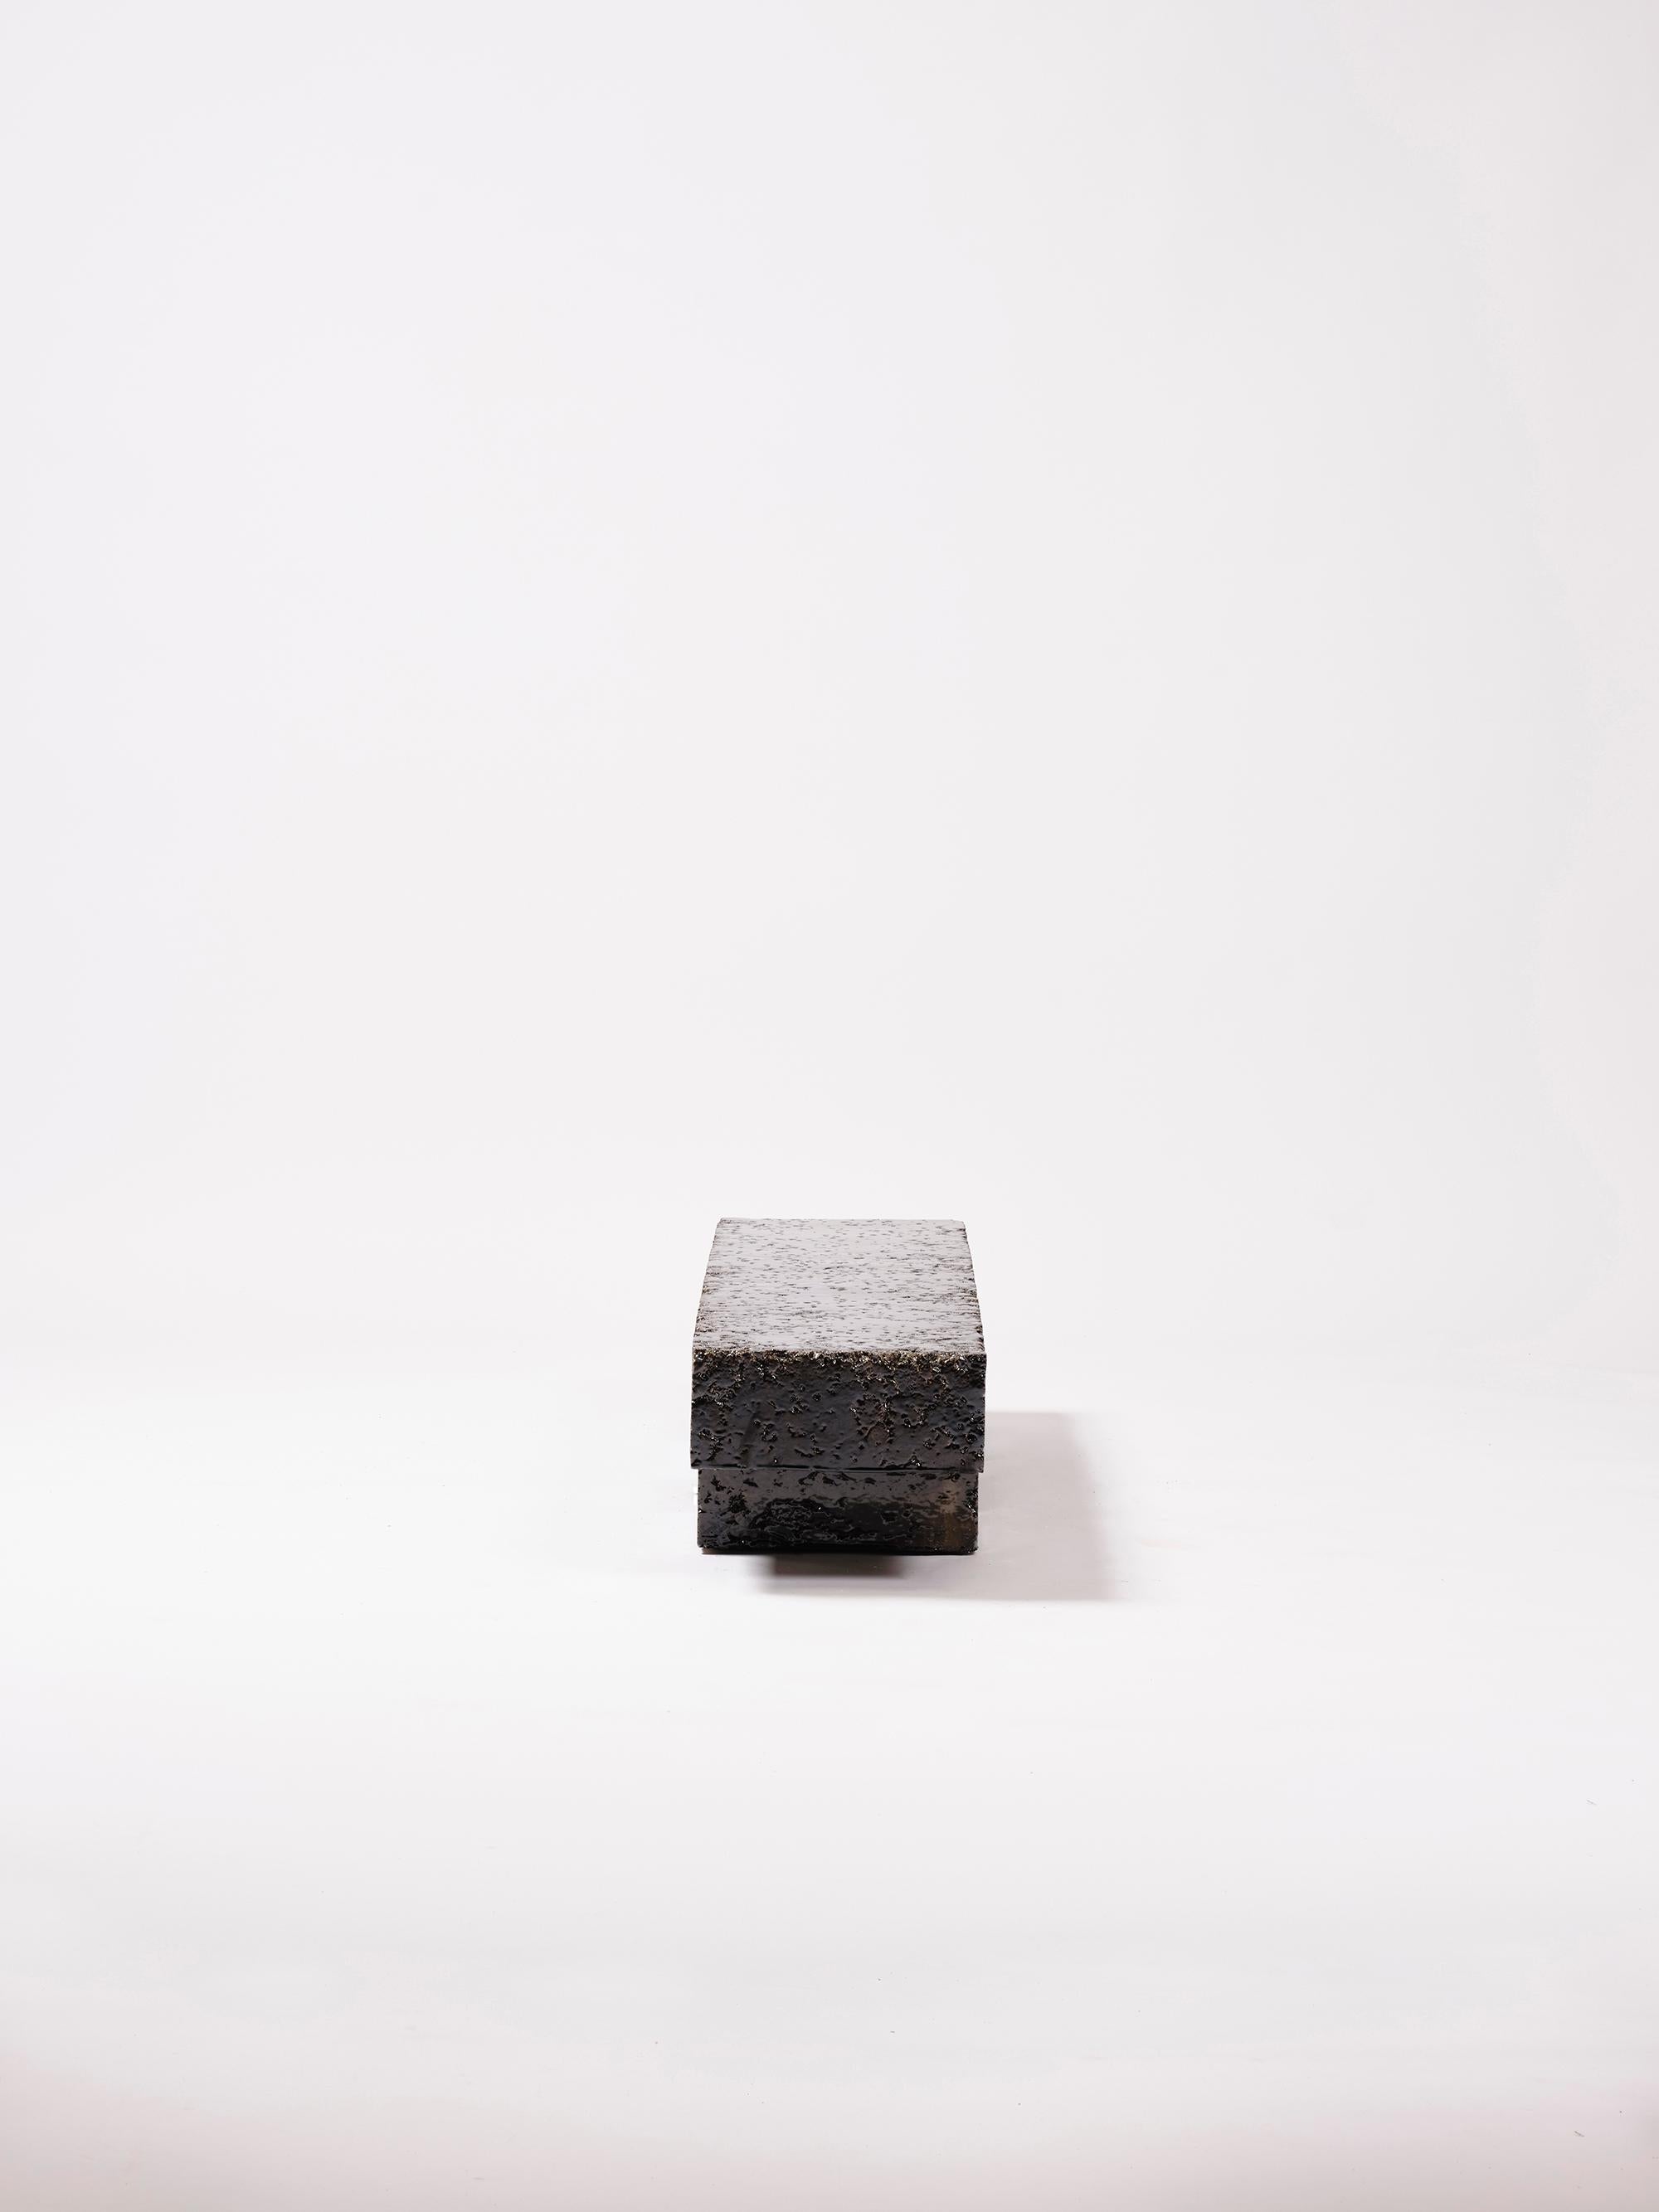 Handgefertigter Couchtisch aus Steingut, hergestellt in der Werkstatt von Apparatu in Barcelona. Verschiedene Tonkörper werden mit Naturfasern wie Mais, Stroh oder Heidestroh gemischt. Die Stücke werden von Hand gegossen, wodurch eine dicke und